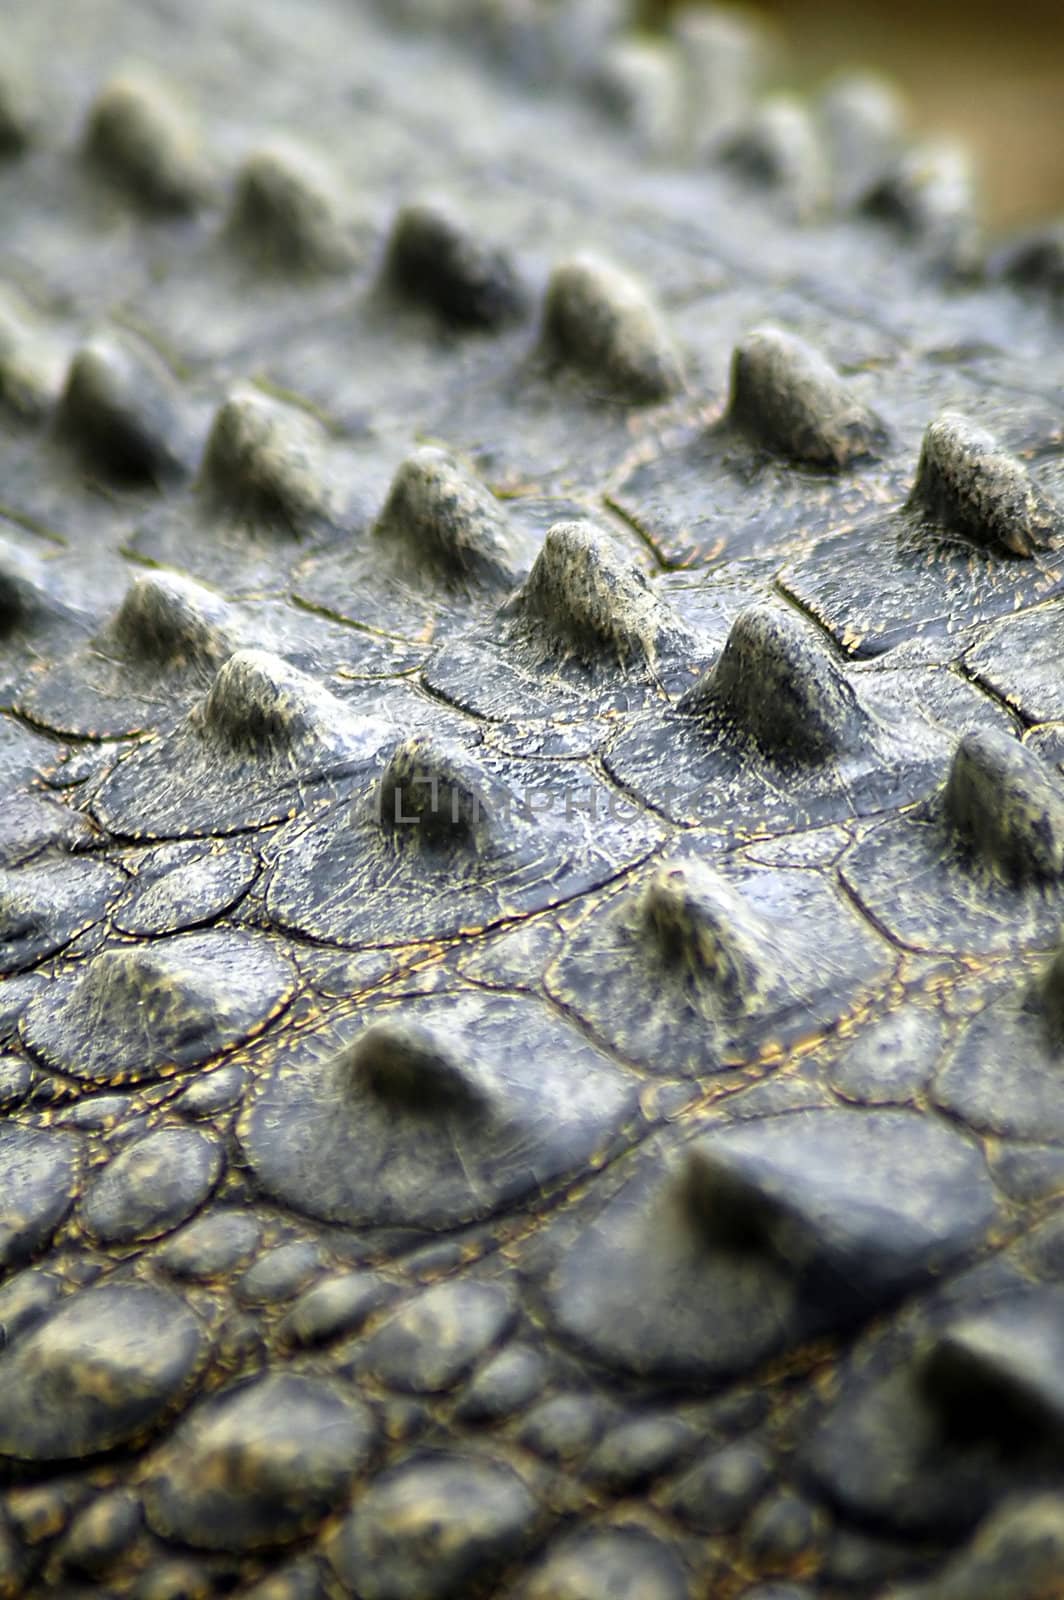 salt-water crocodile skin detail, picture taken in Sydney zoo